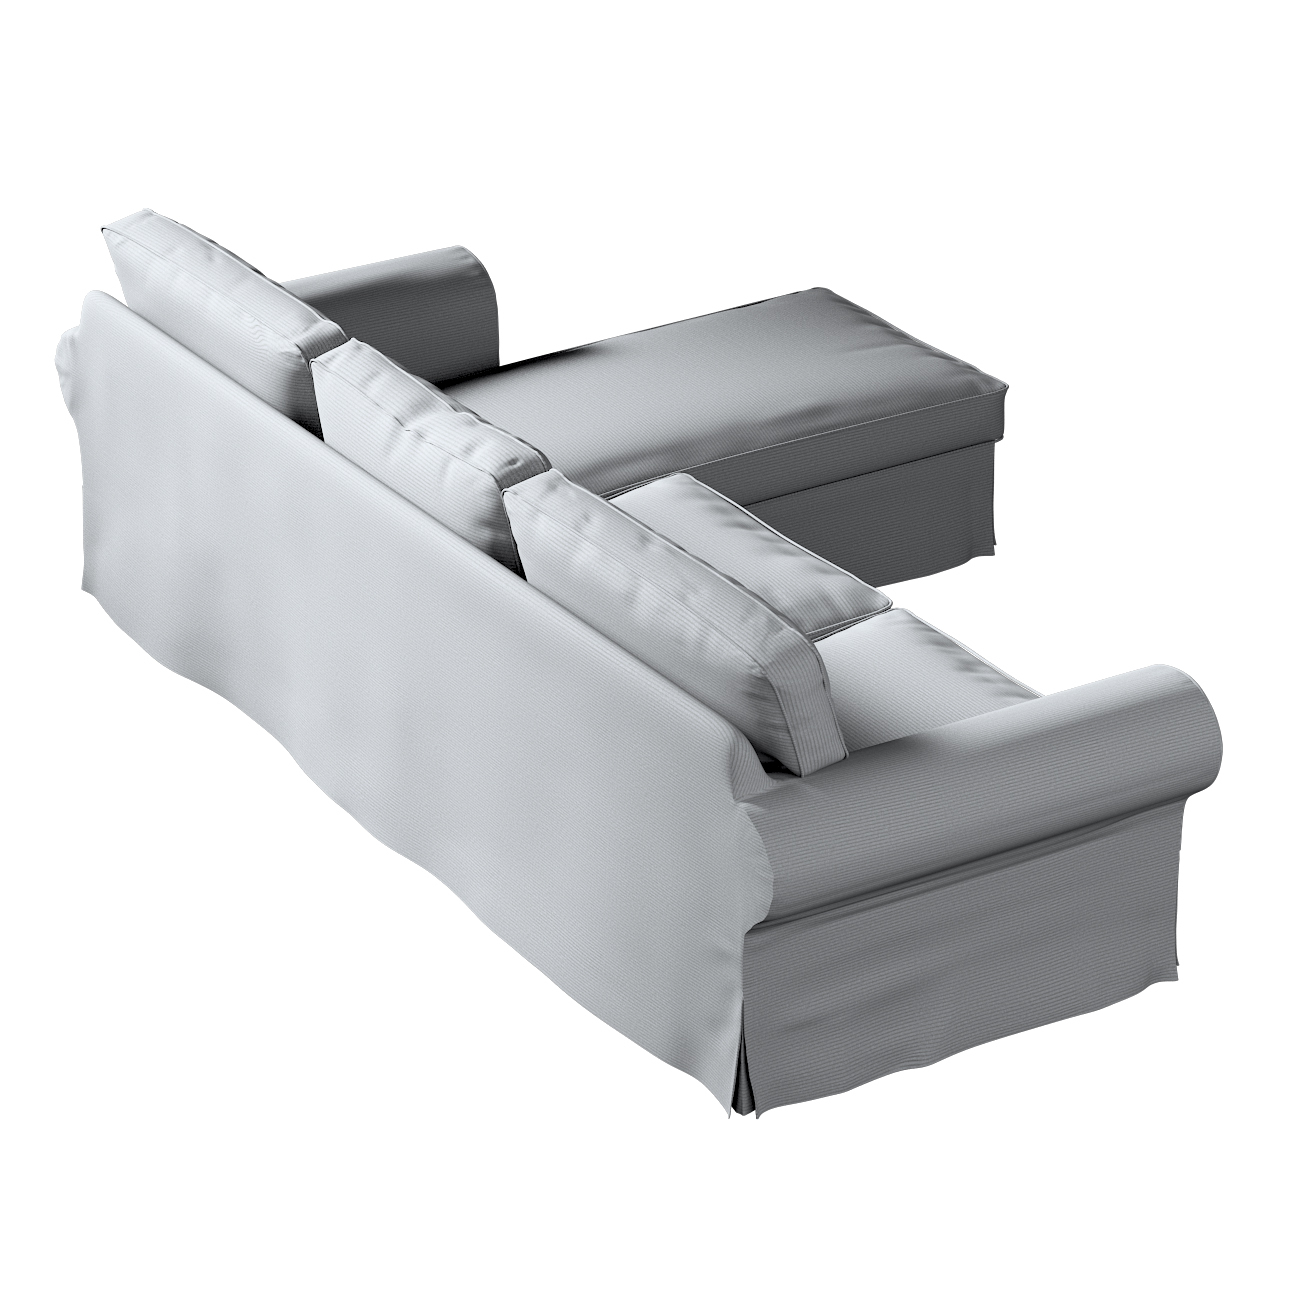 Bezug für Ektorp 2-Sitzer Sofa mit Recamiere, hellgrau, Ektorp 2-Sitzer Sof günstig online kaufen